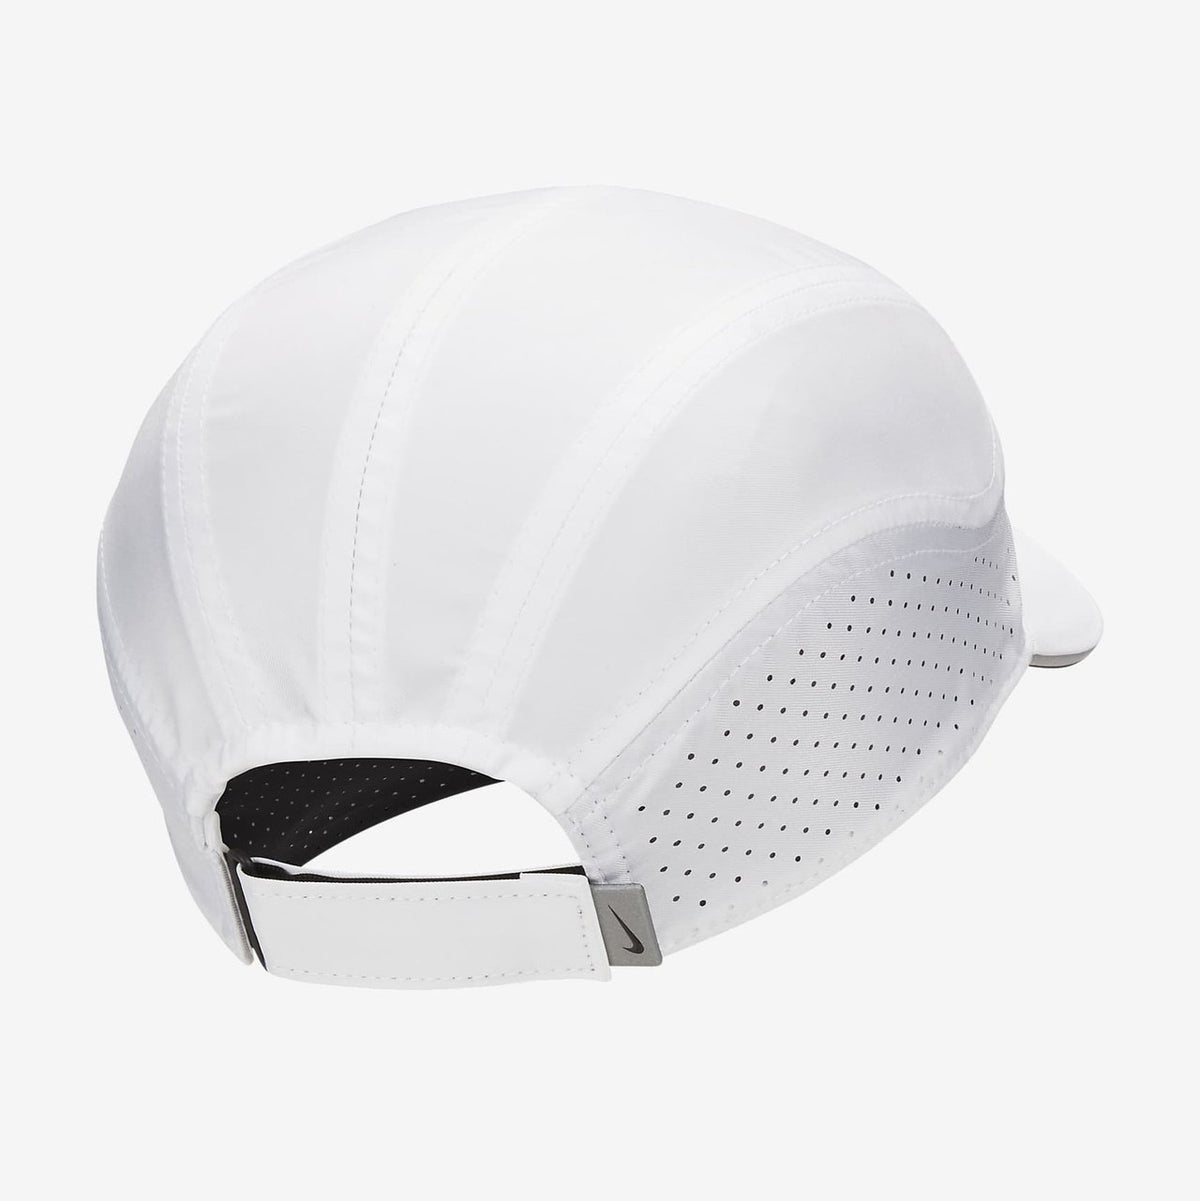 Nike Dri-Fit ADV Fly GEAR - Unisex Hats, Visors &amp; Headwear 